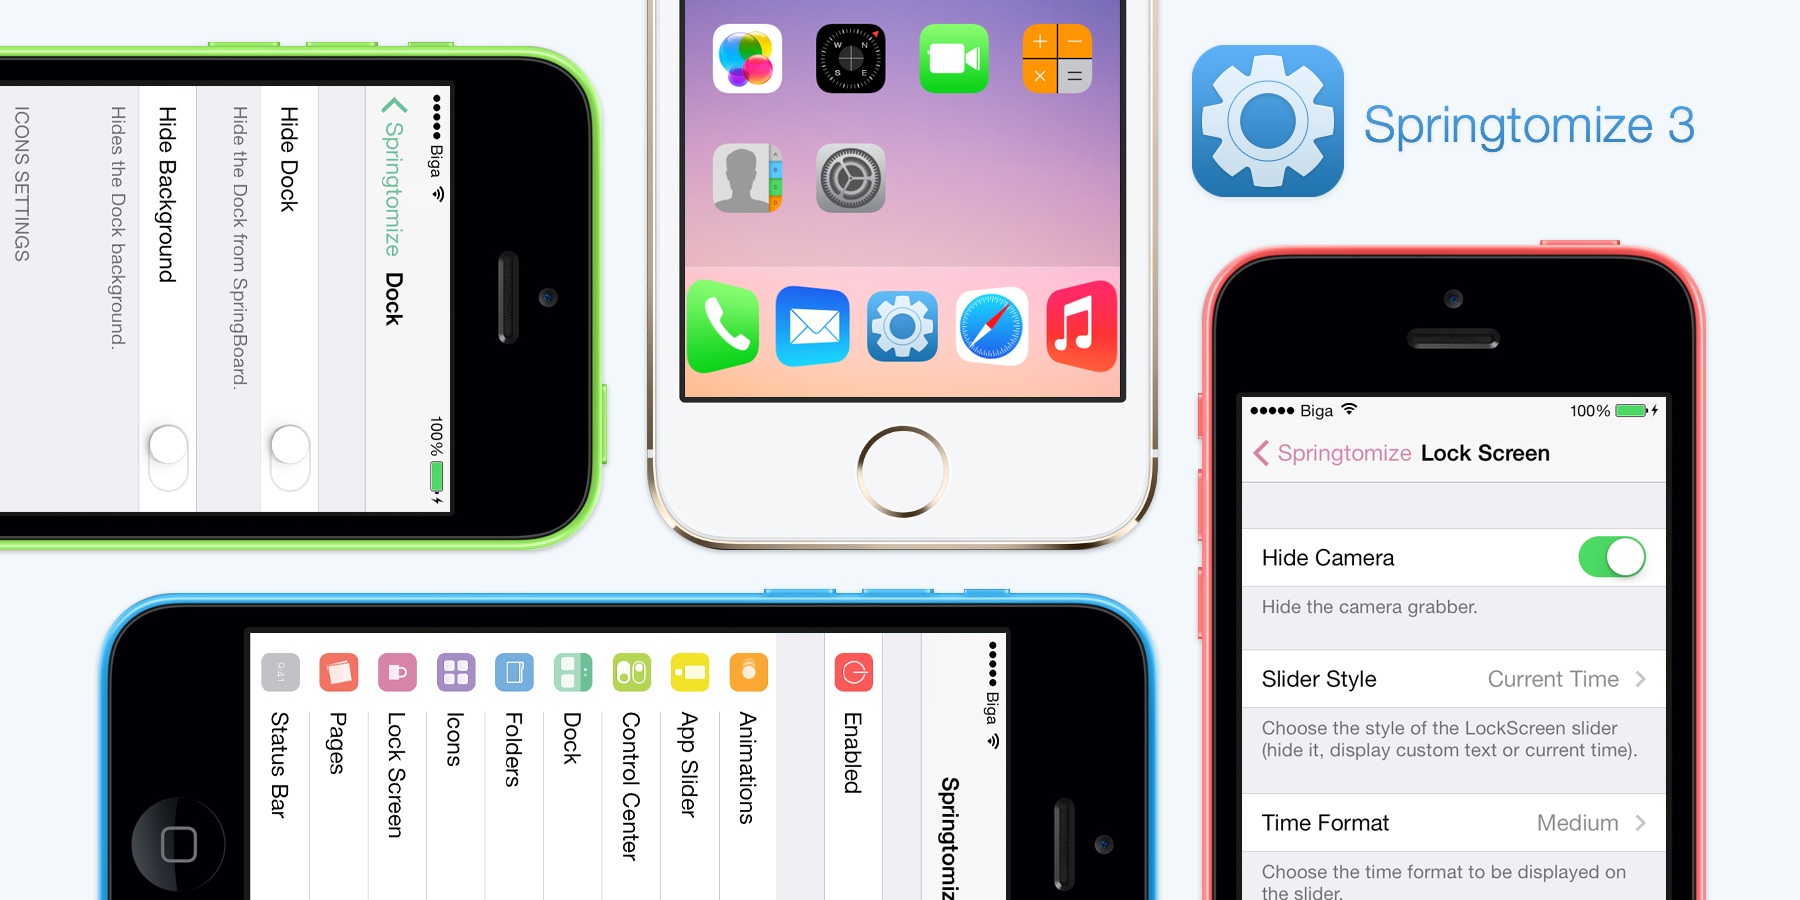 Springtomize 3 iOS 9